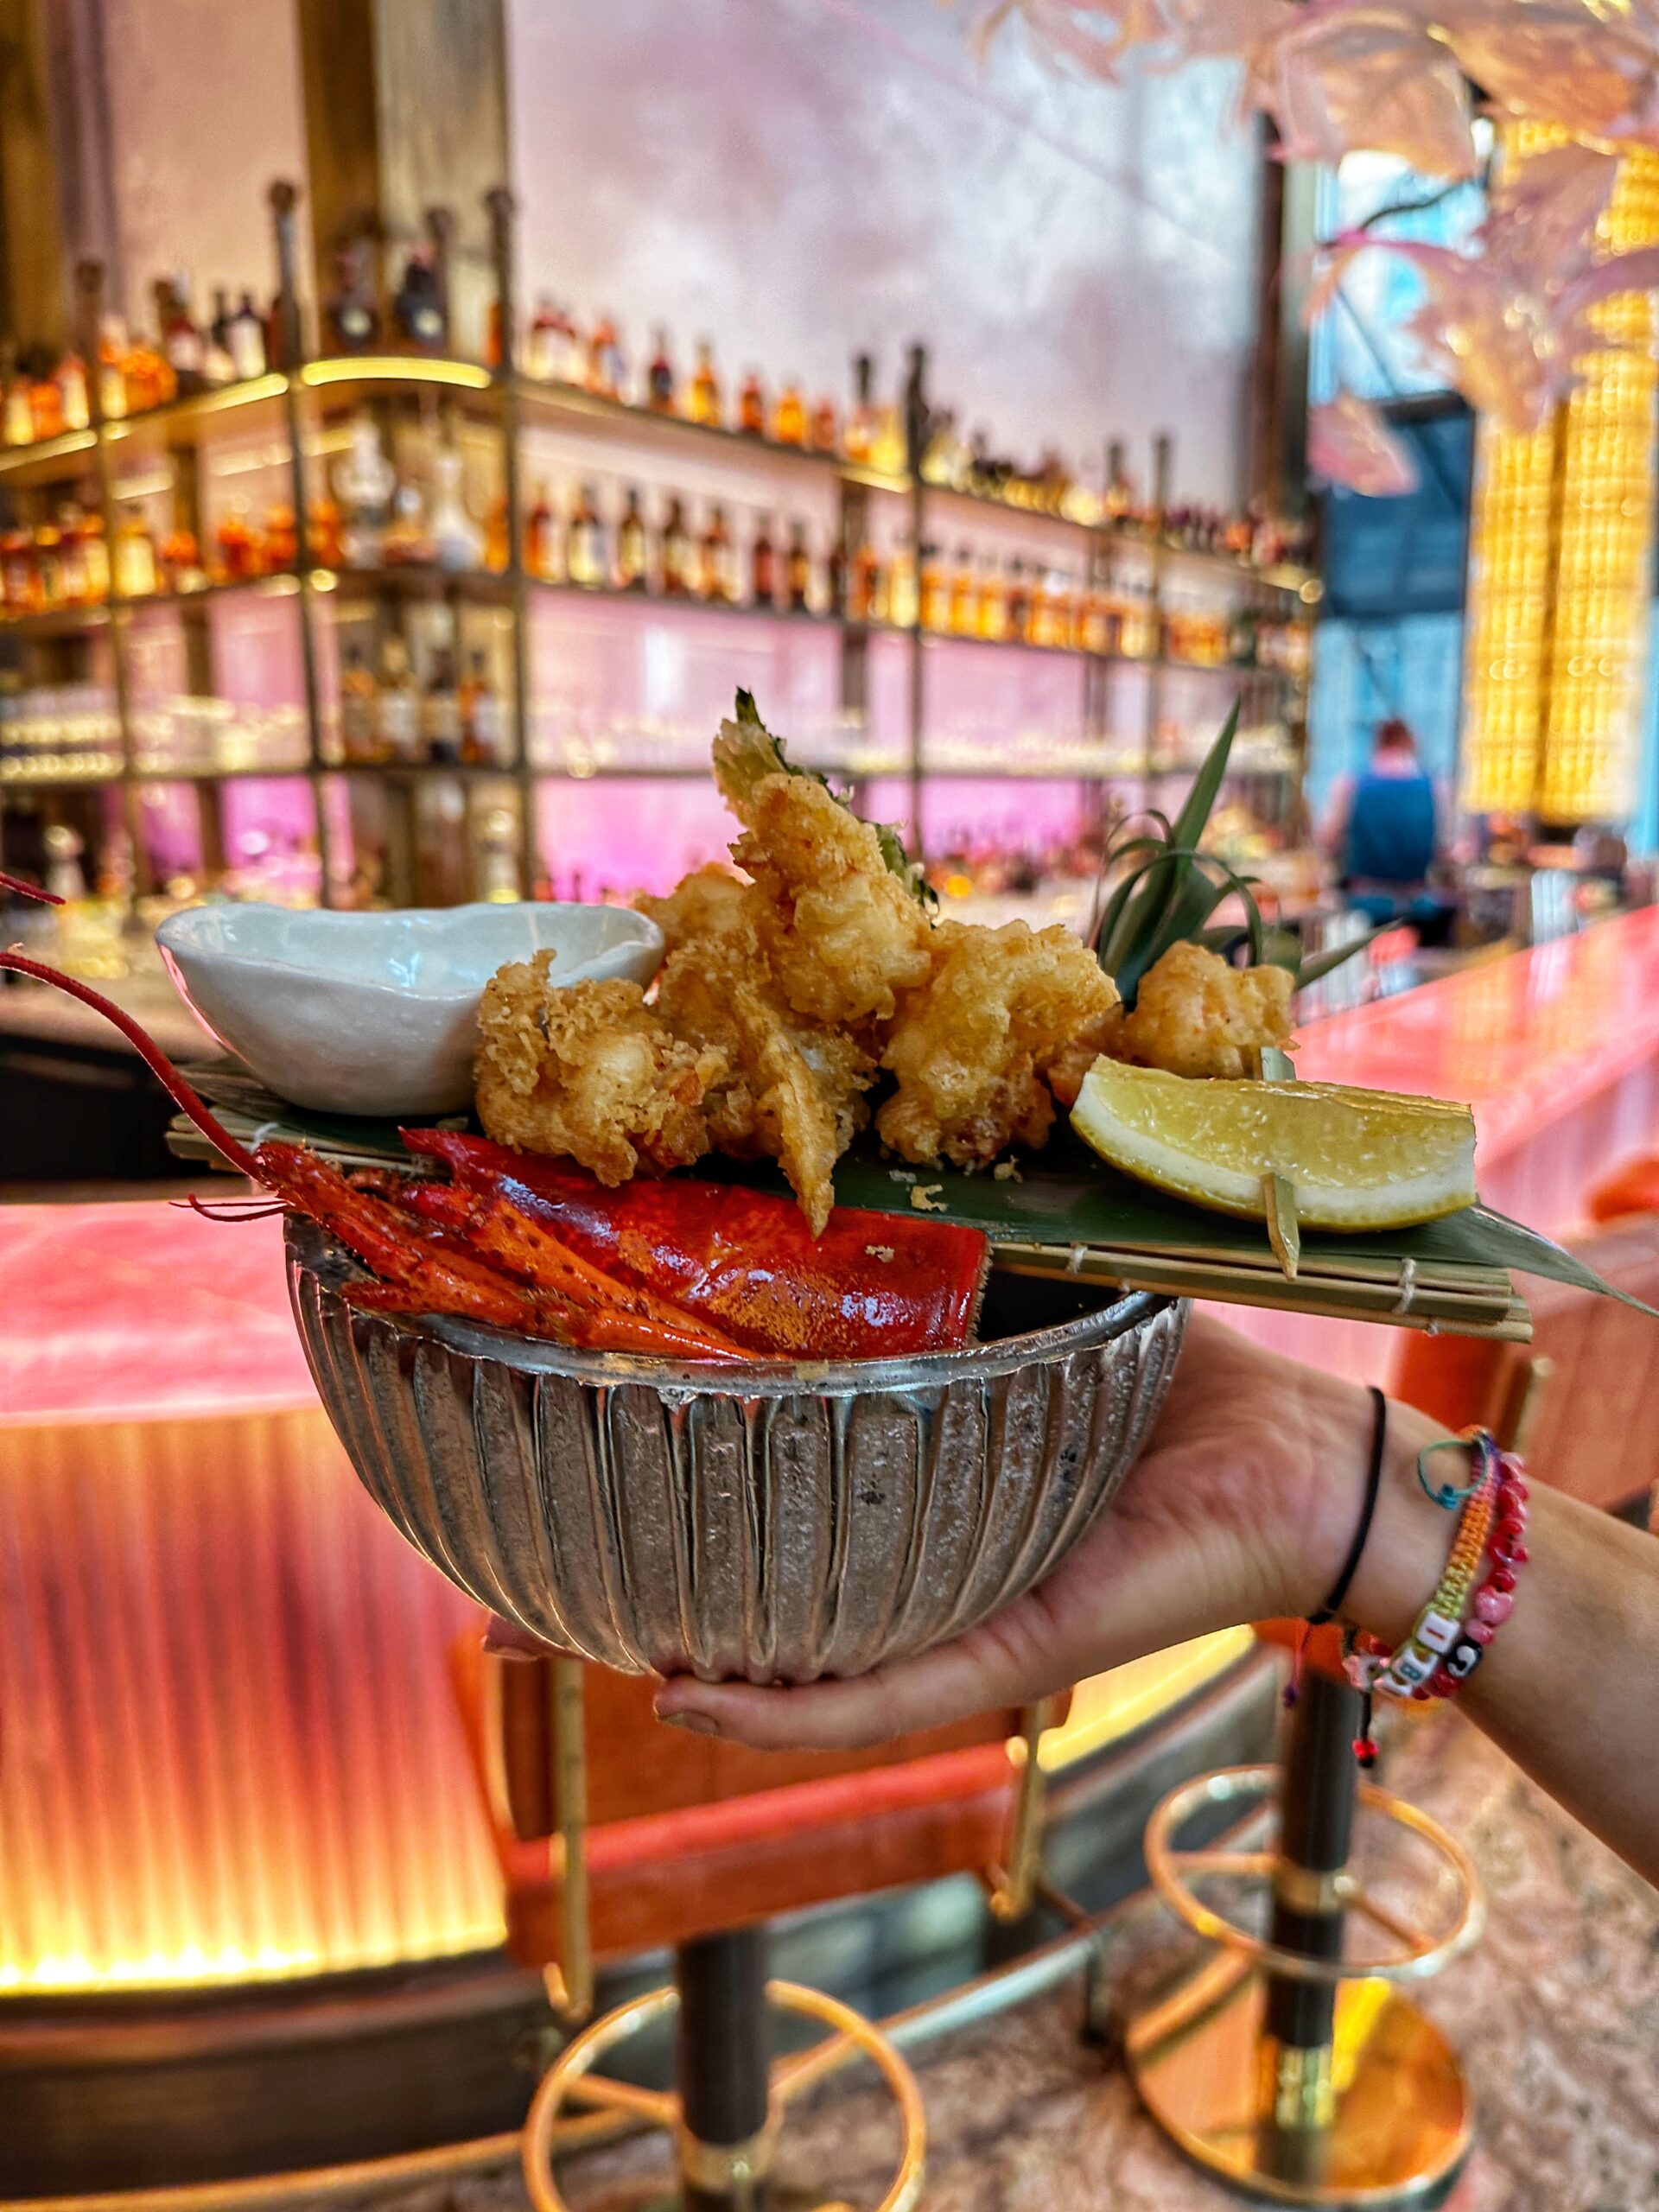 Lobster tempura